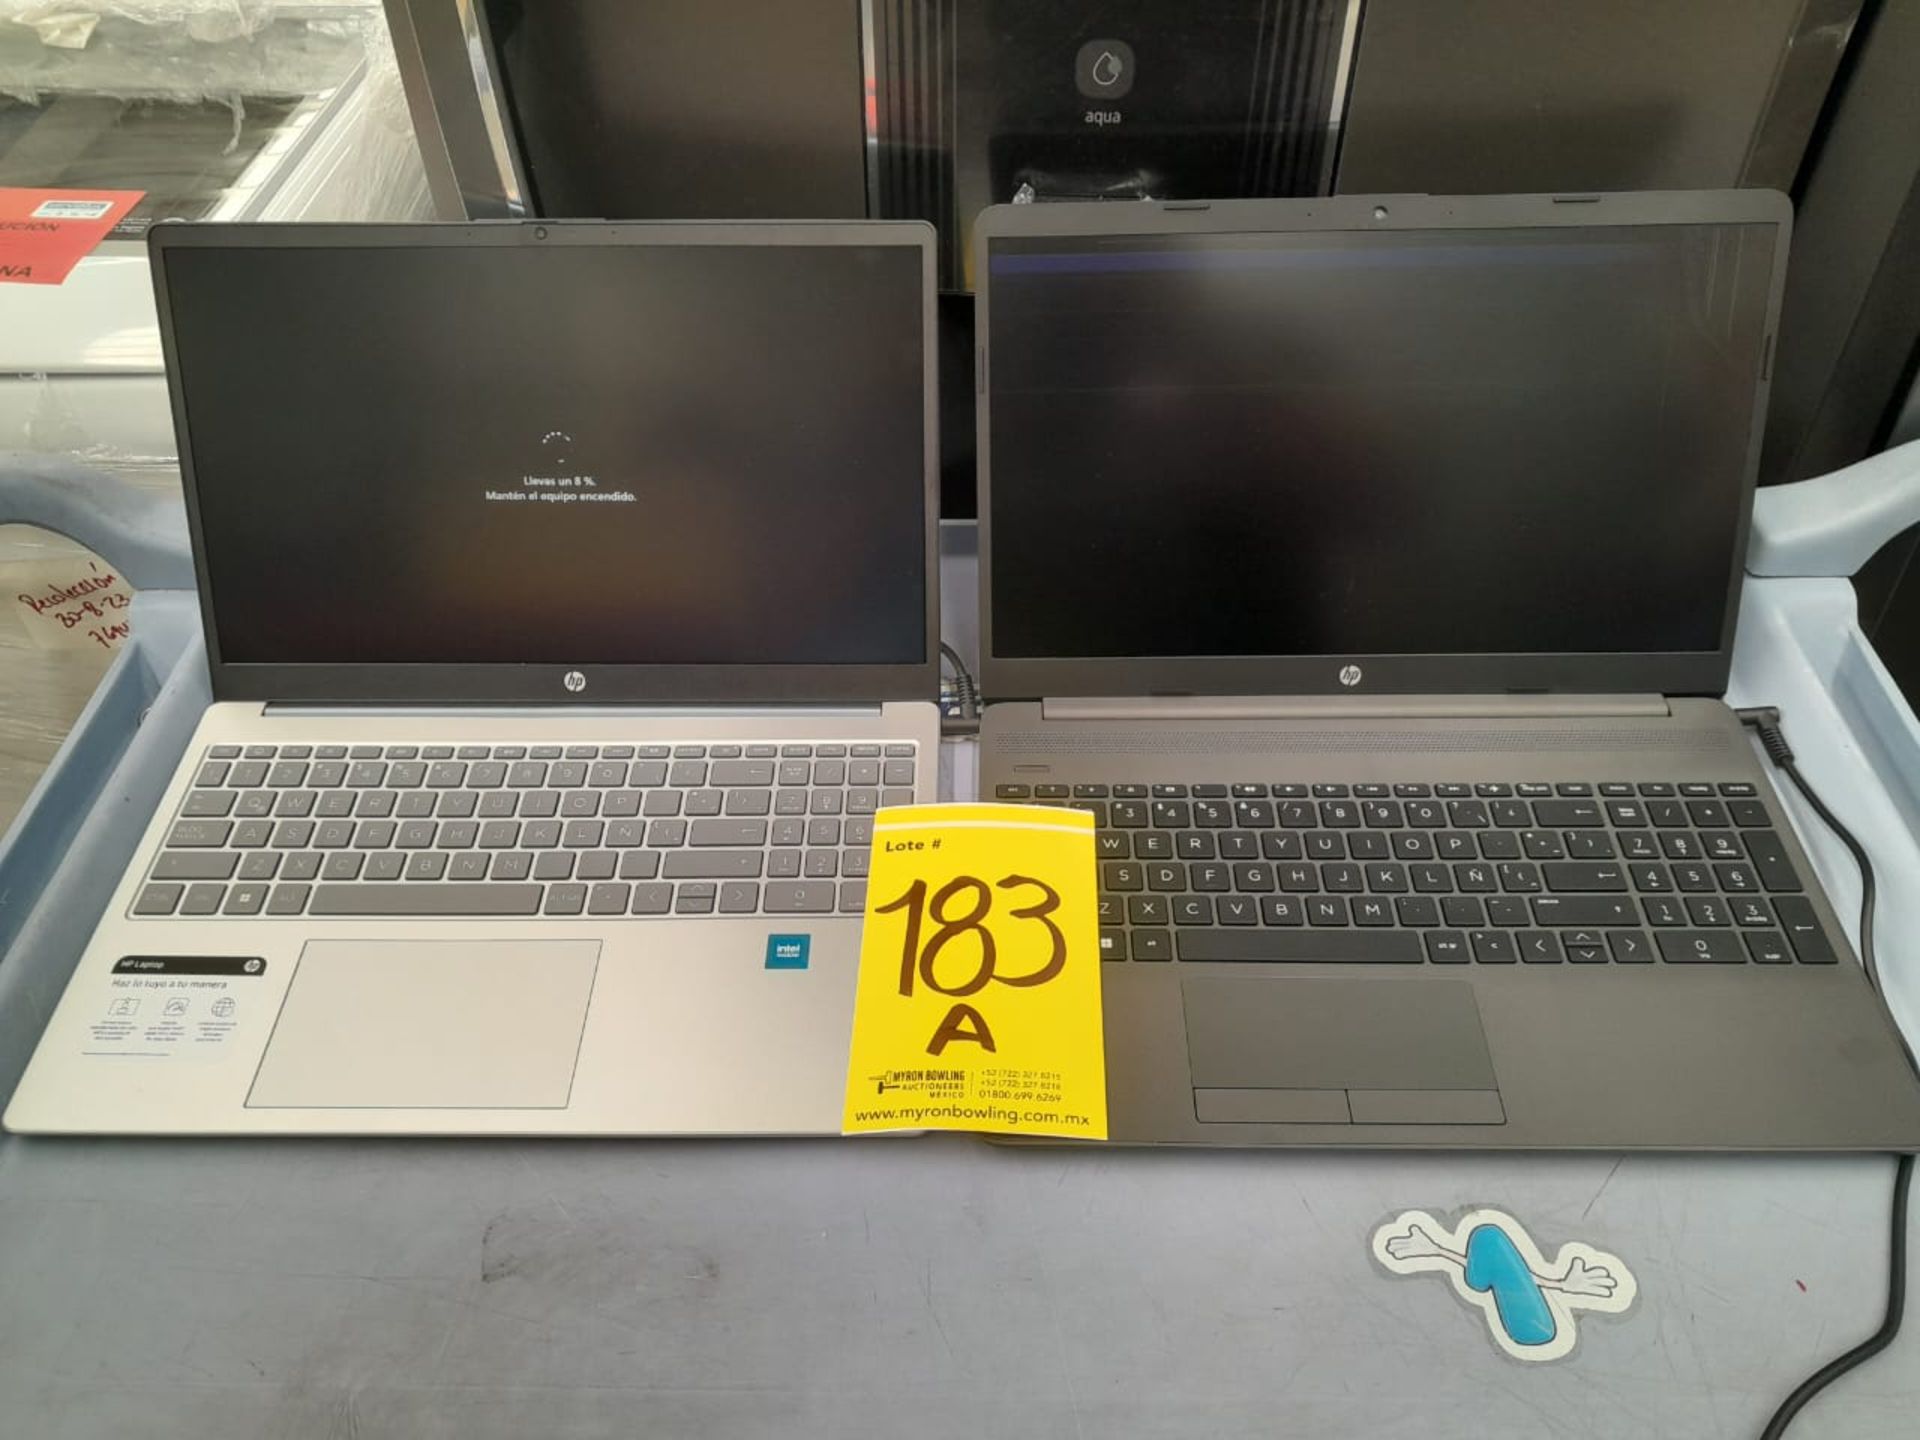 Lote de 2 laptops contiene: 1 laptop Marca HP, Modelo YLZ, 255 GB de almacenamiento, 8 GB de RAM (n